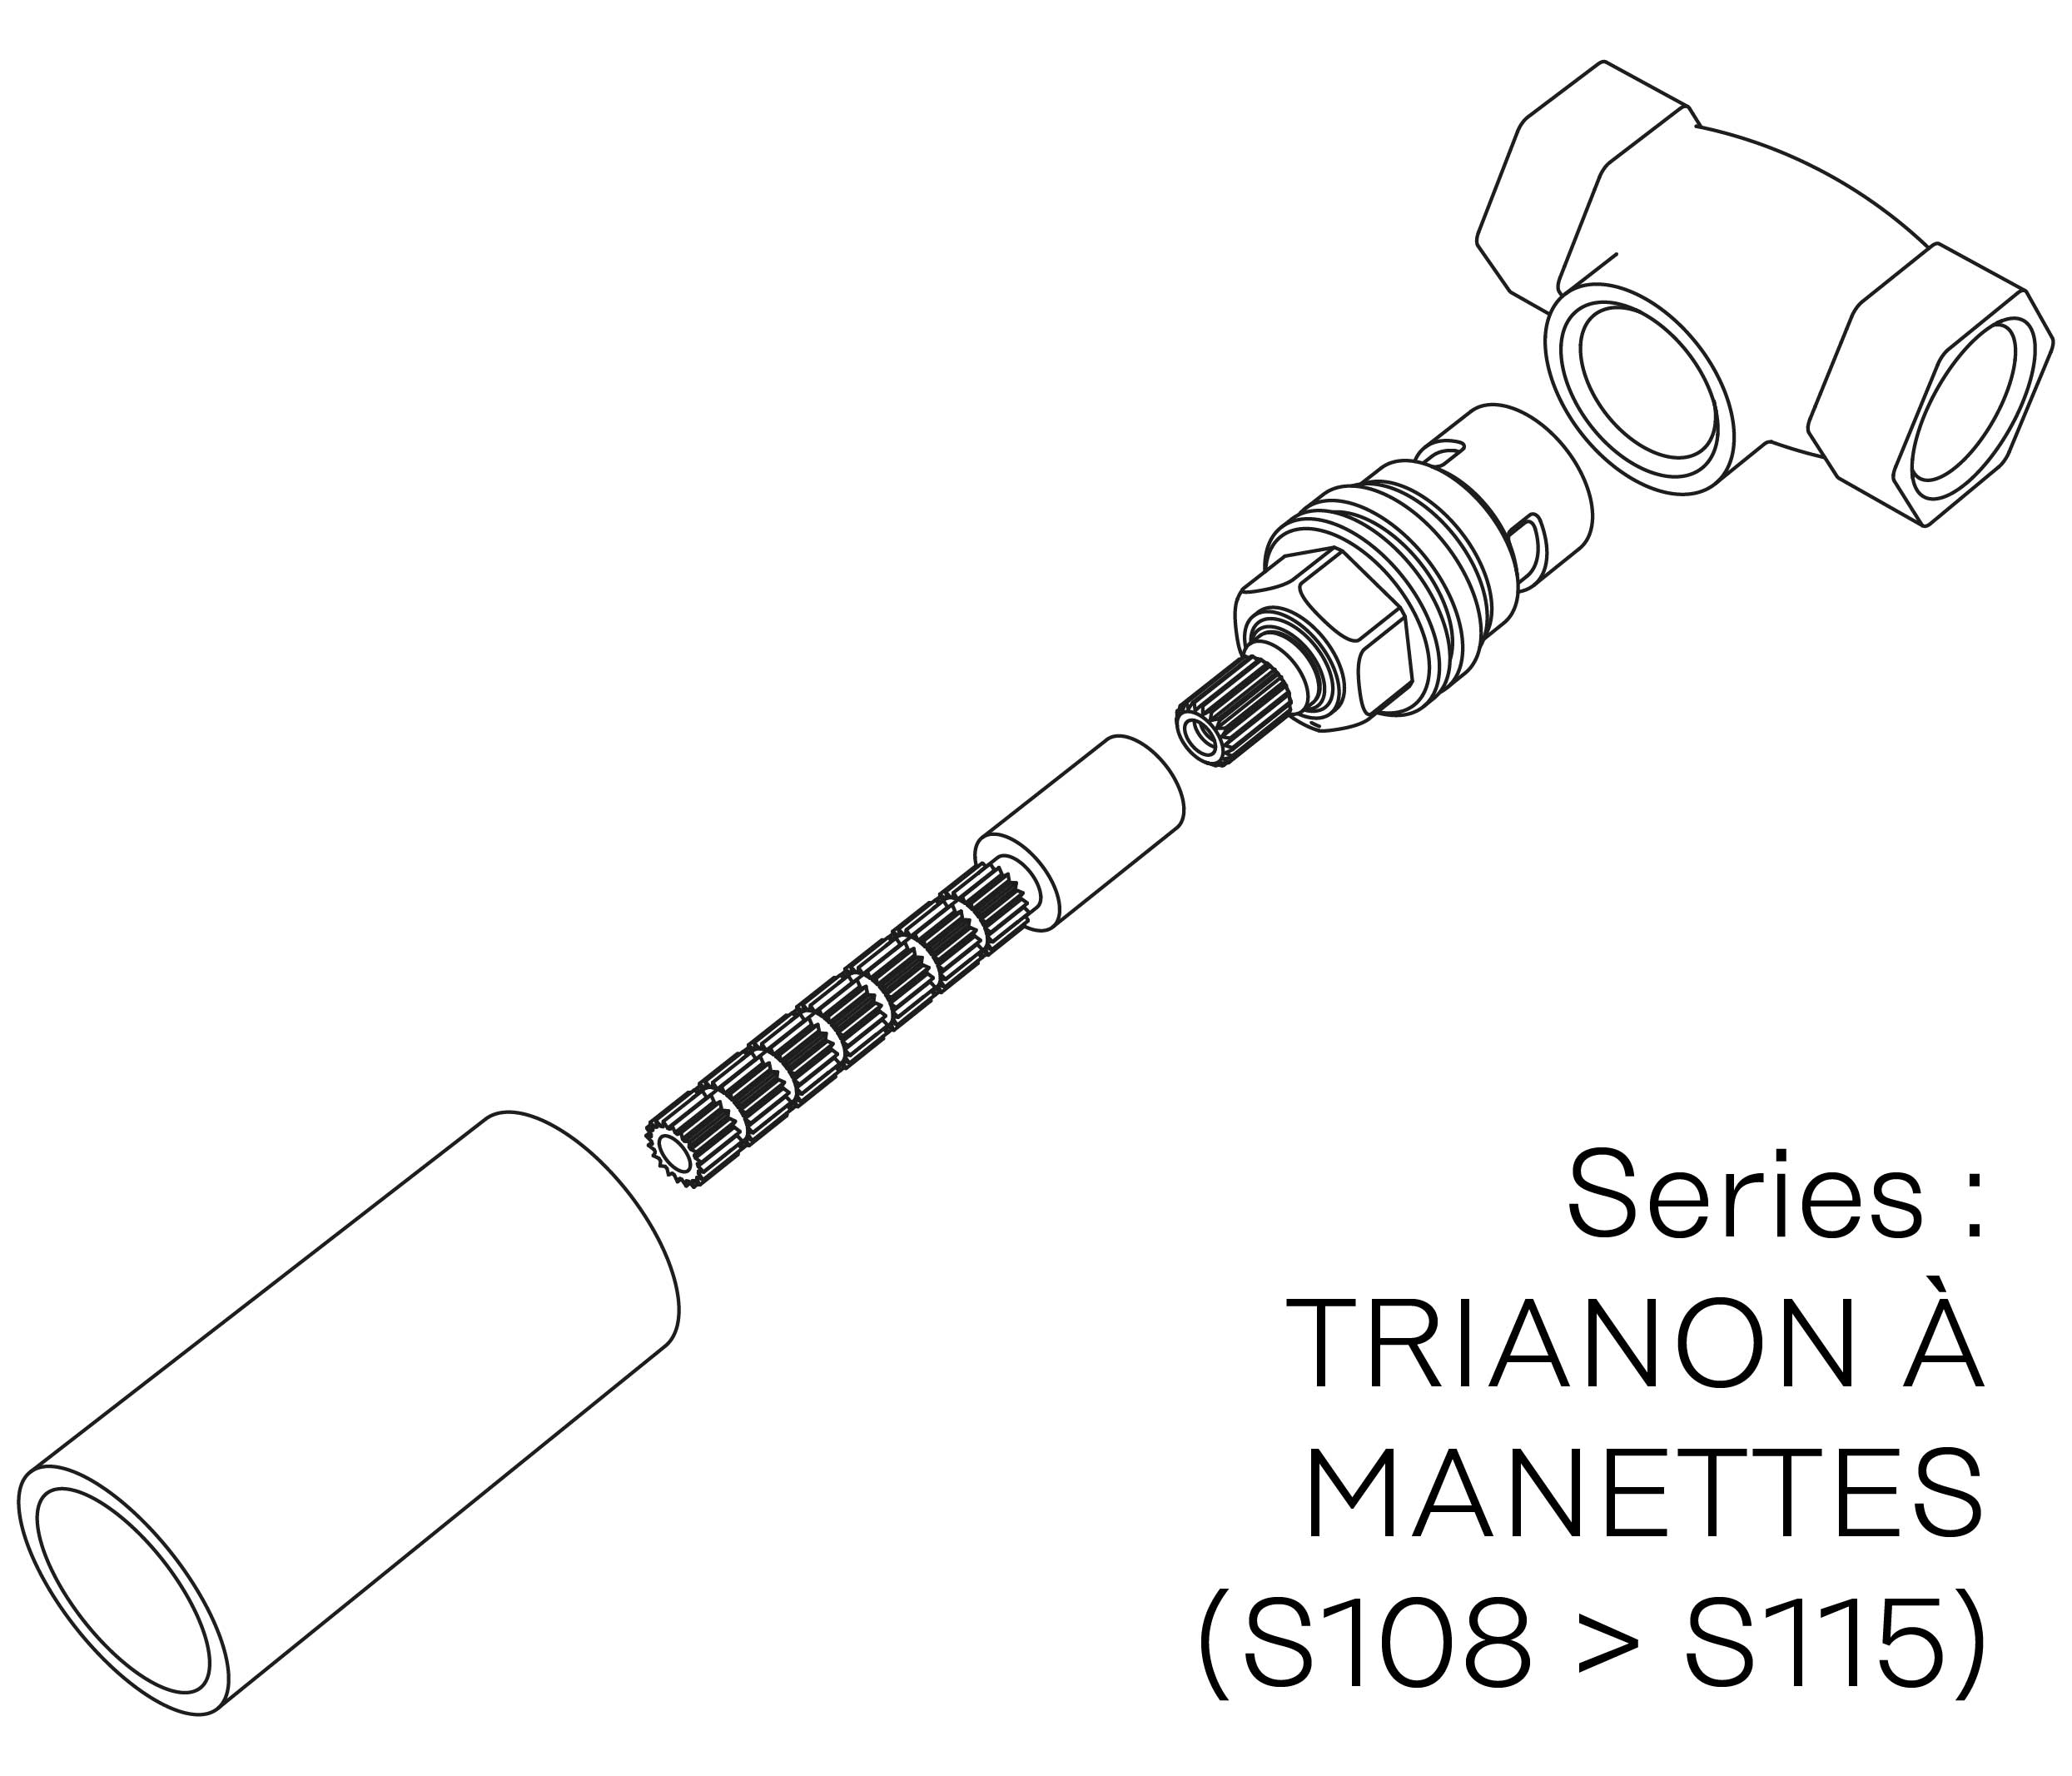 S00-26K29C Kit #6 for W-M valve 3/4″, 1/4 turn, Right